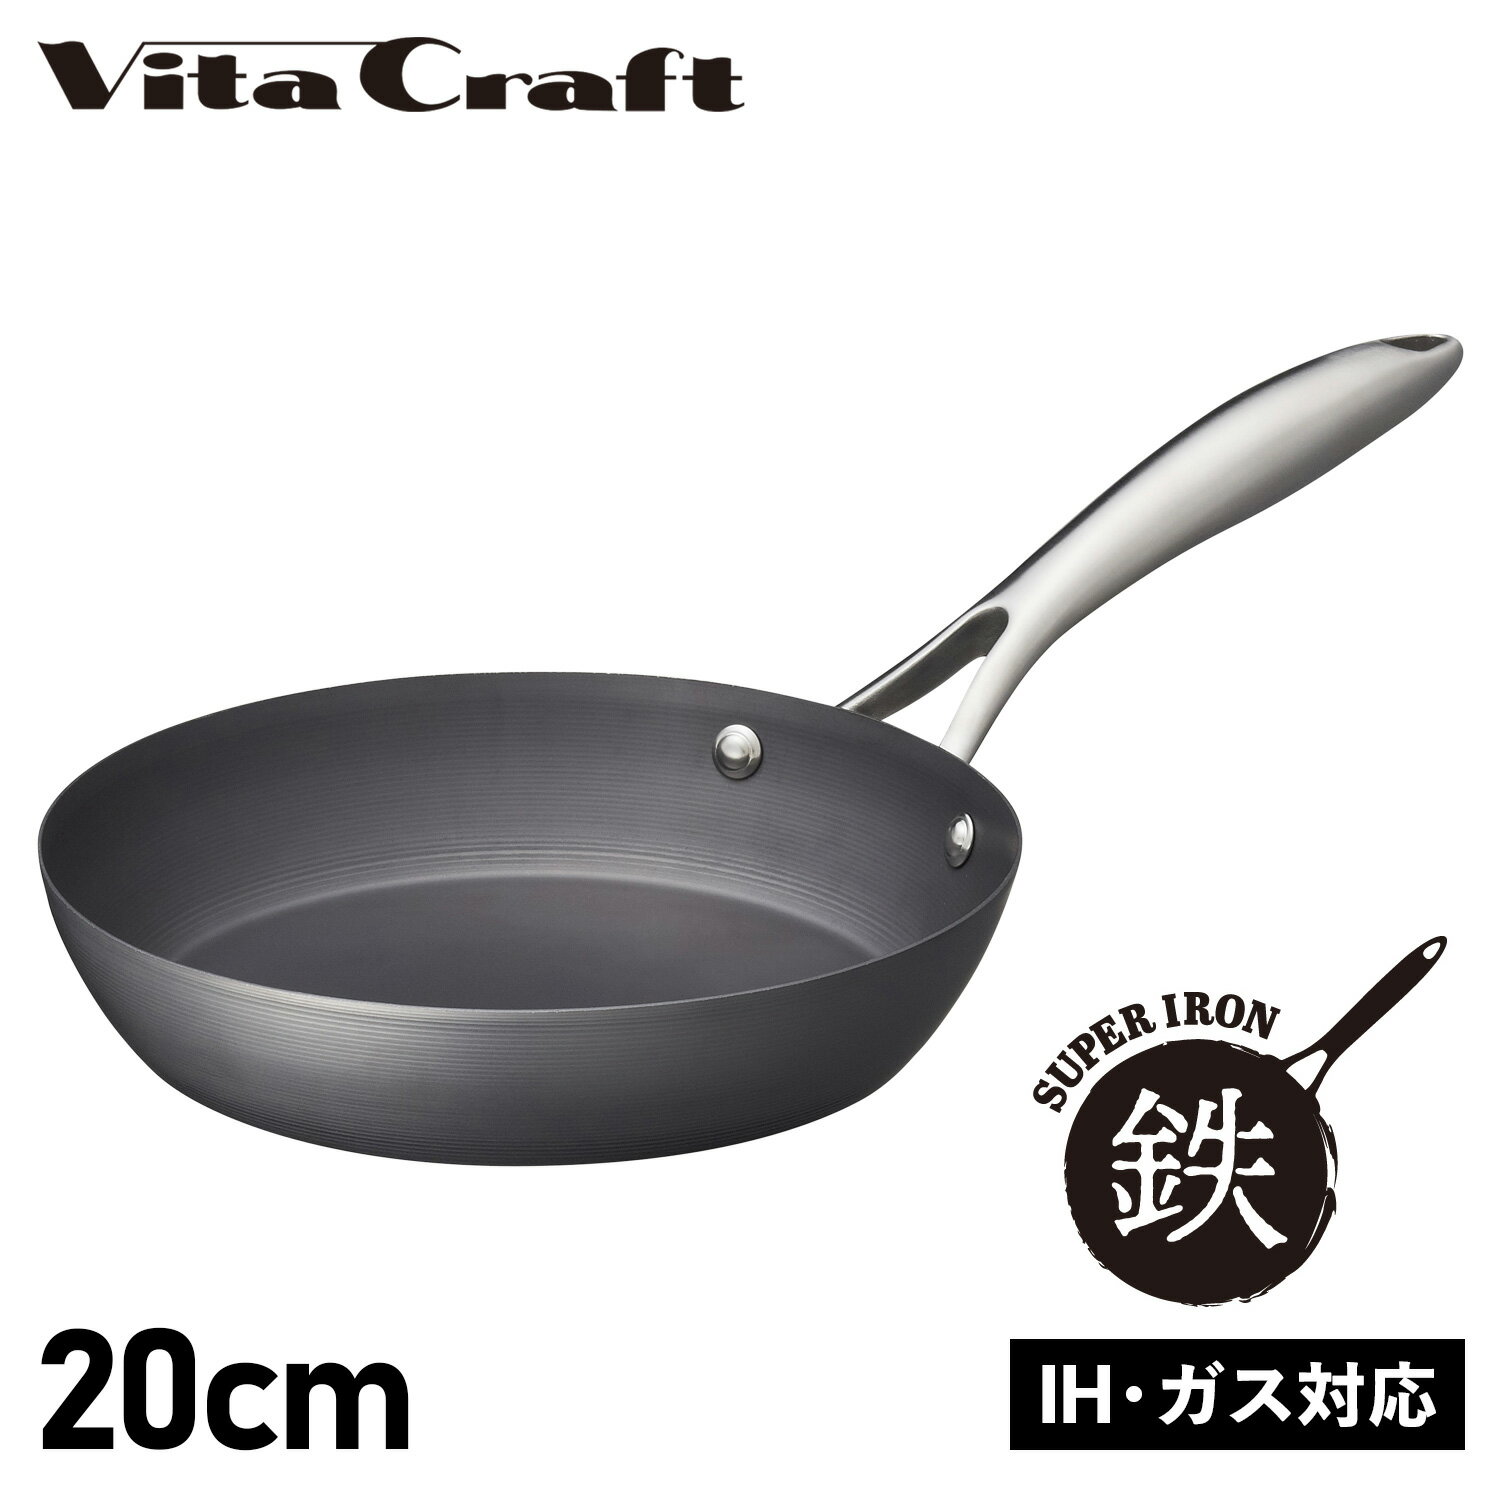 フライパン ビタクラフト Vita Craft スーパー鉄 フライパン 20cm IH ガス対応 FRY PAN 2001